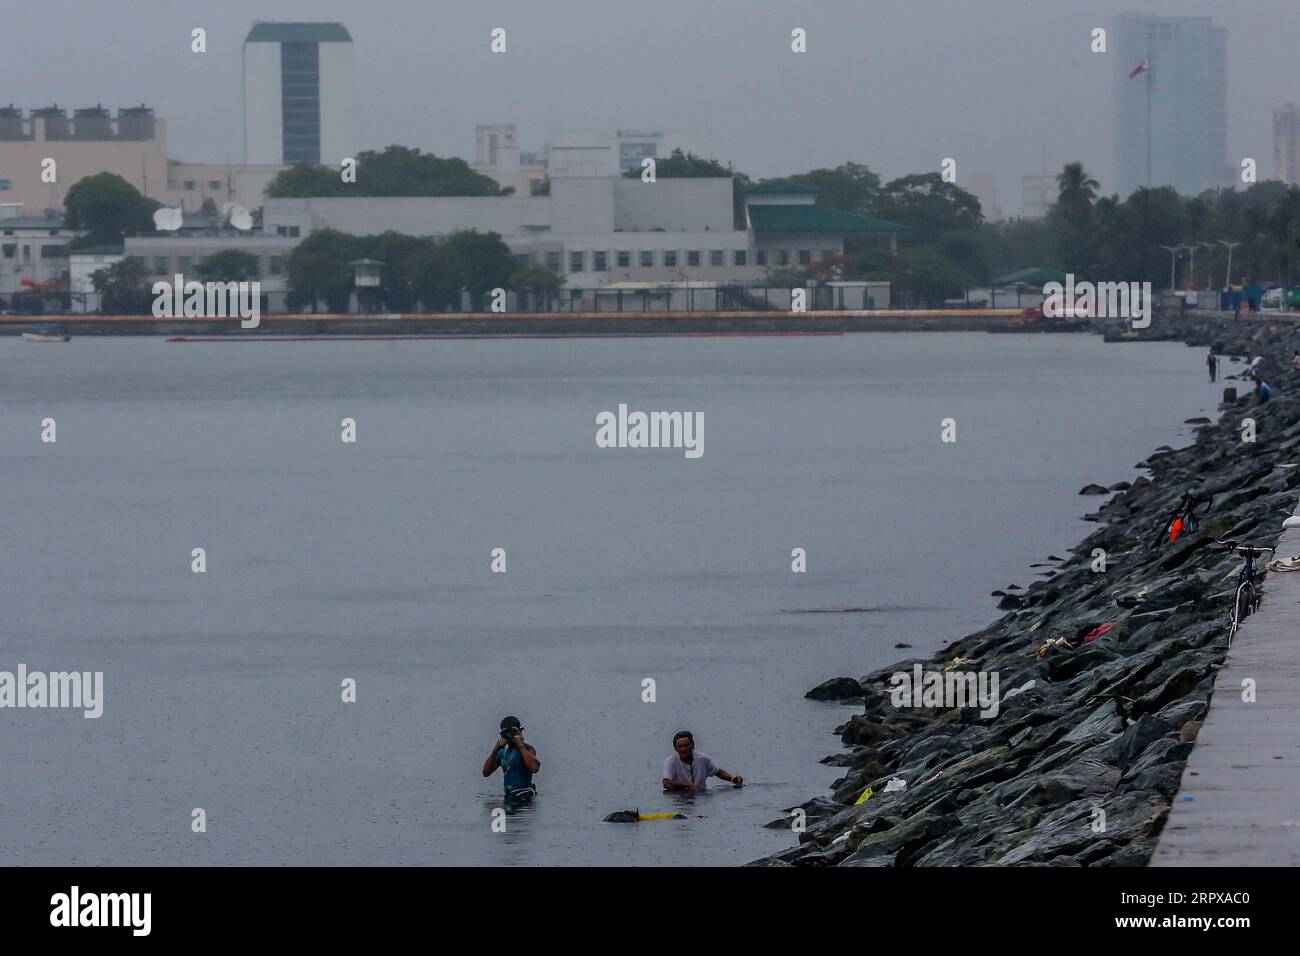 200515 -- MANILA, 15. Mai 2020 Xinhua -- Fischer schwimmen, um Krabben zu fangen, die durch den Taifun Vongfong am 15. Mai 2020 in der Bucht von Manila auf den Philippinen verursacht wurden. Taifun Vongfong riss Dächer ab und erschütterte Bäume, als er am Donnerstag um 12:15 Uhr Ortszeit in der zentralphilippinischen Provinz Eastern Samar landete, sagten die Behörden. Vongfong ist der erste Taifun, der die Philippinen in diesem Jahr erschüttert, da das Land mit den Auswirkungen der COVID-19-Pandemie zu kämpfen hat. Xinhua/Rouelle Umali PHILIPPINEN-MANILA-TAIFUN VONGFONG PUBLICATIONxNOTxINxCHN Stockfoto